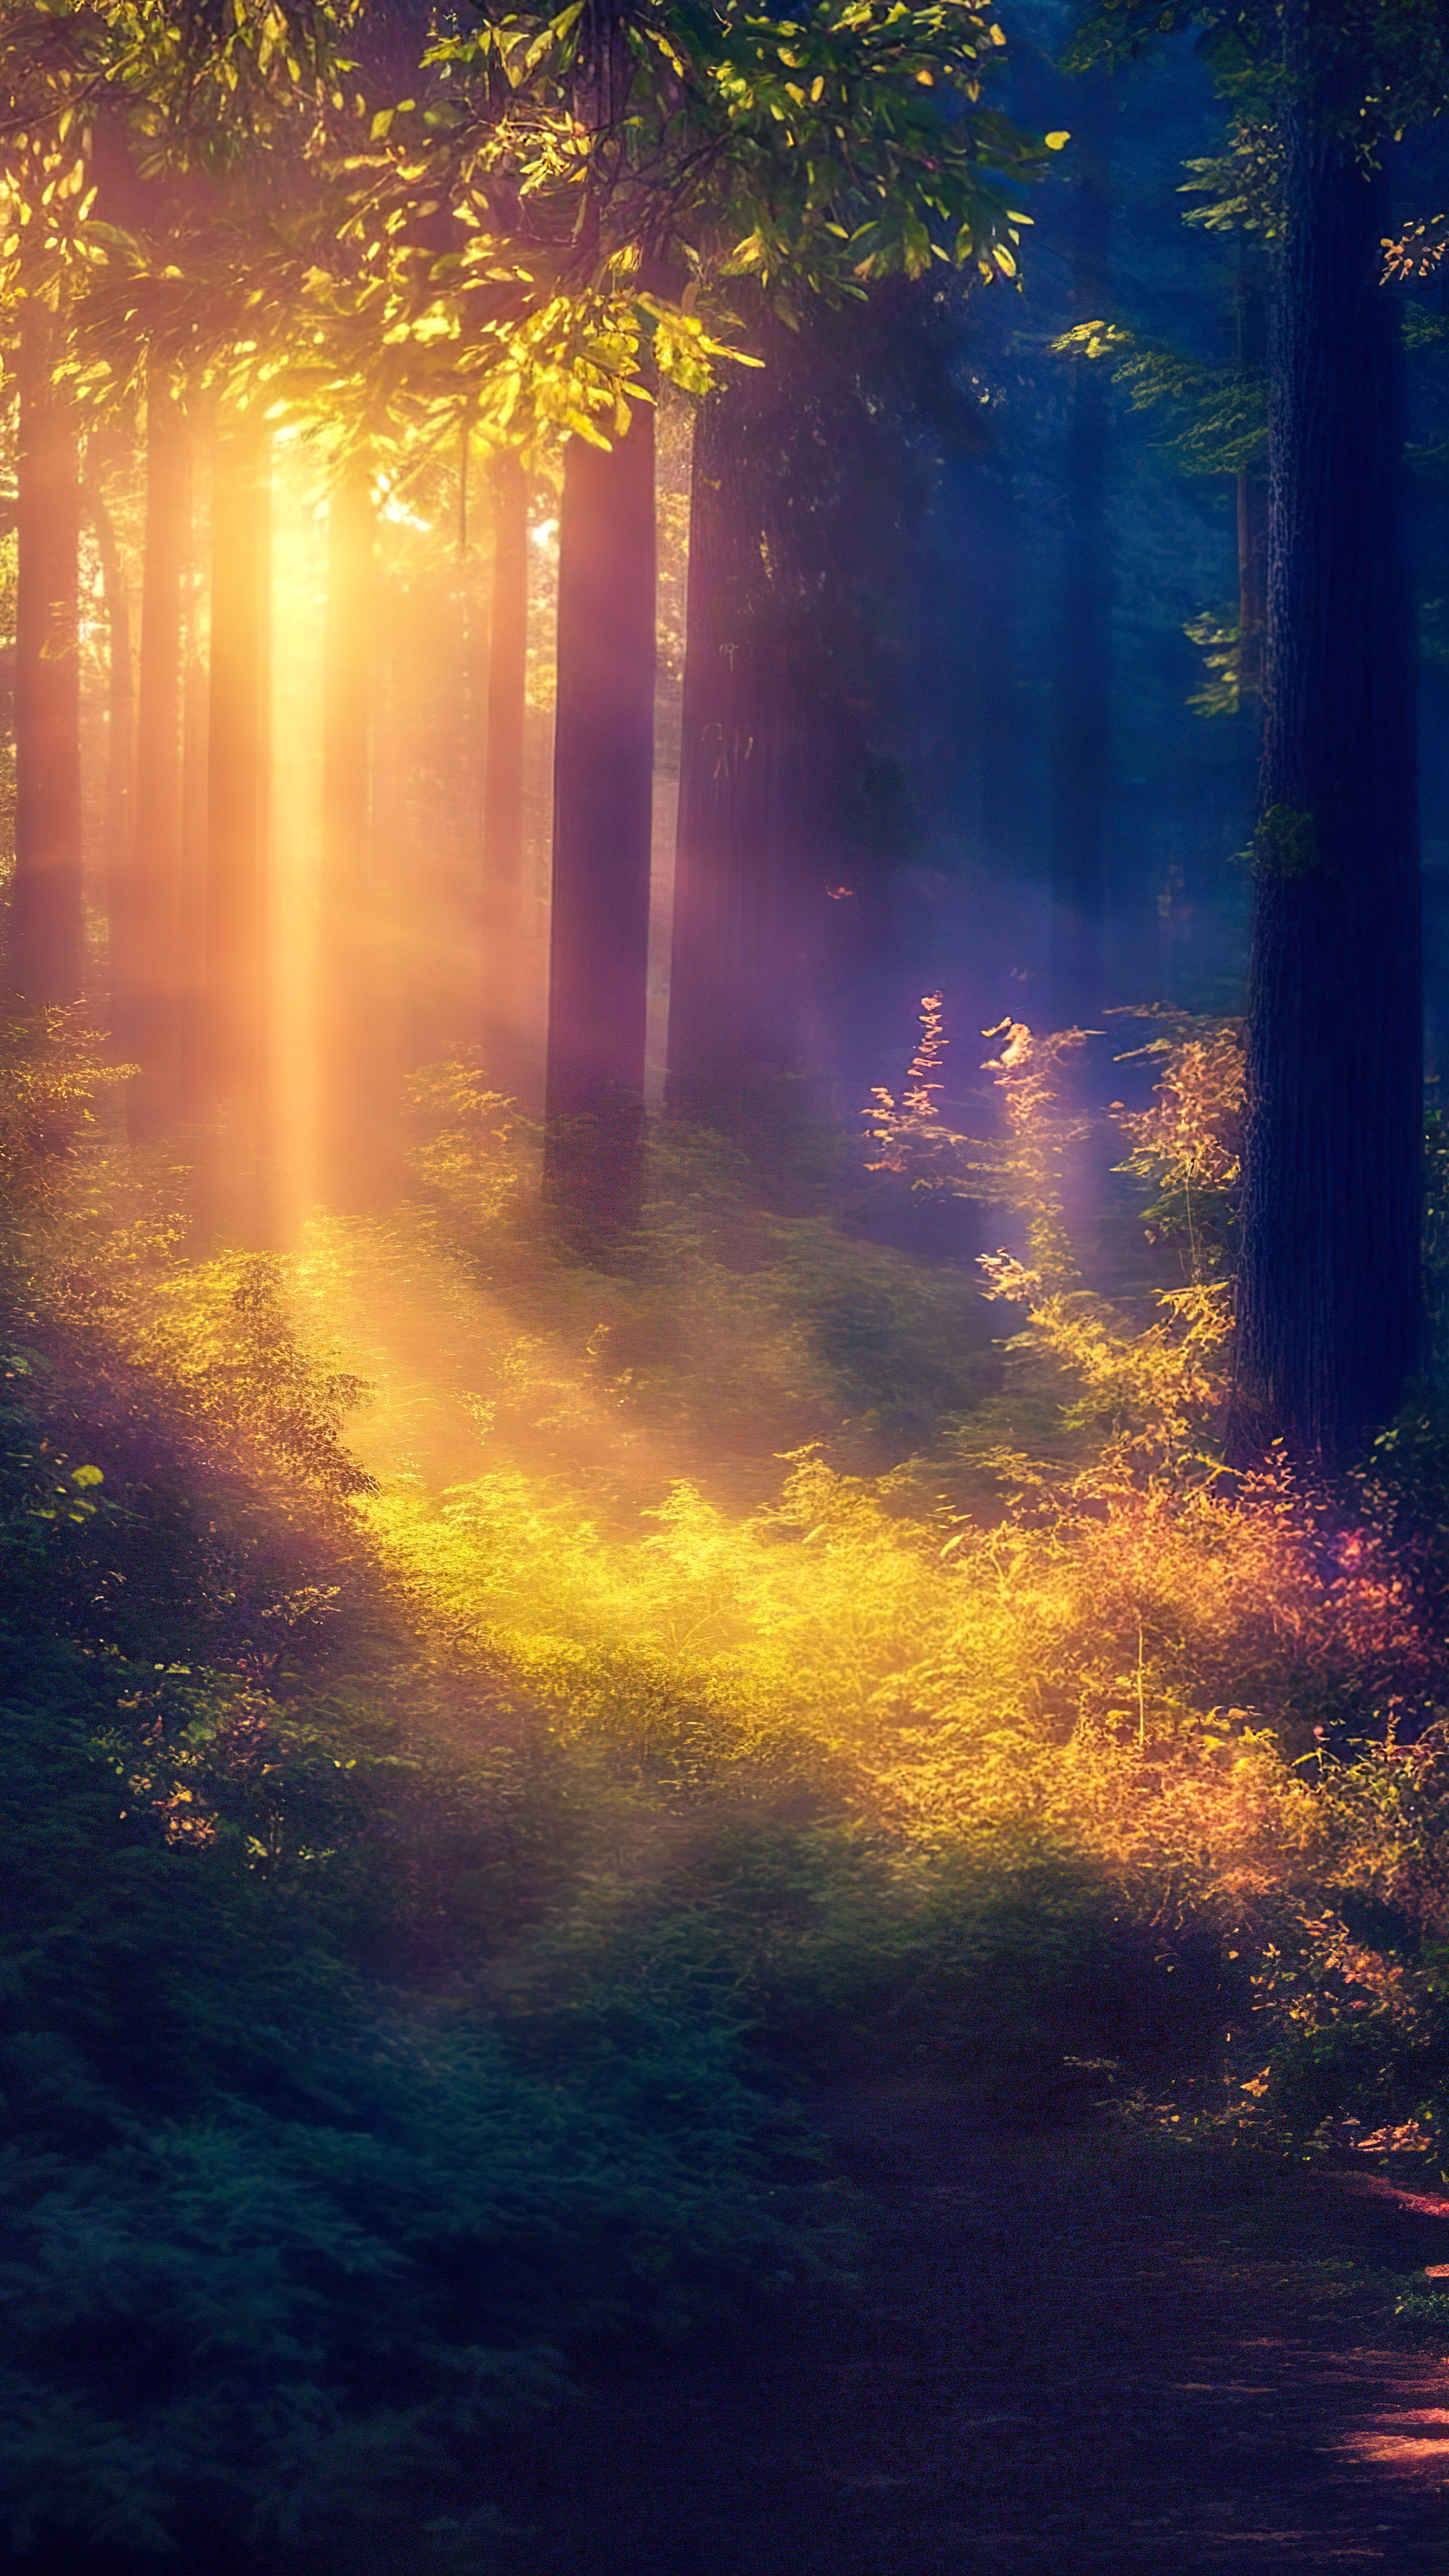 Transformez votre téléphone avec notre fond d'écran de nuit, mettant en scène une forêt magique illuminée par la douce lueur des lucioles lors d'une chaude soirée d'été.